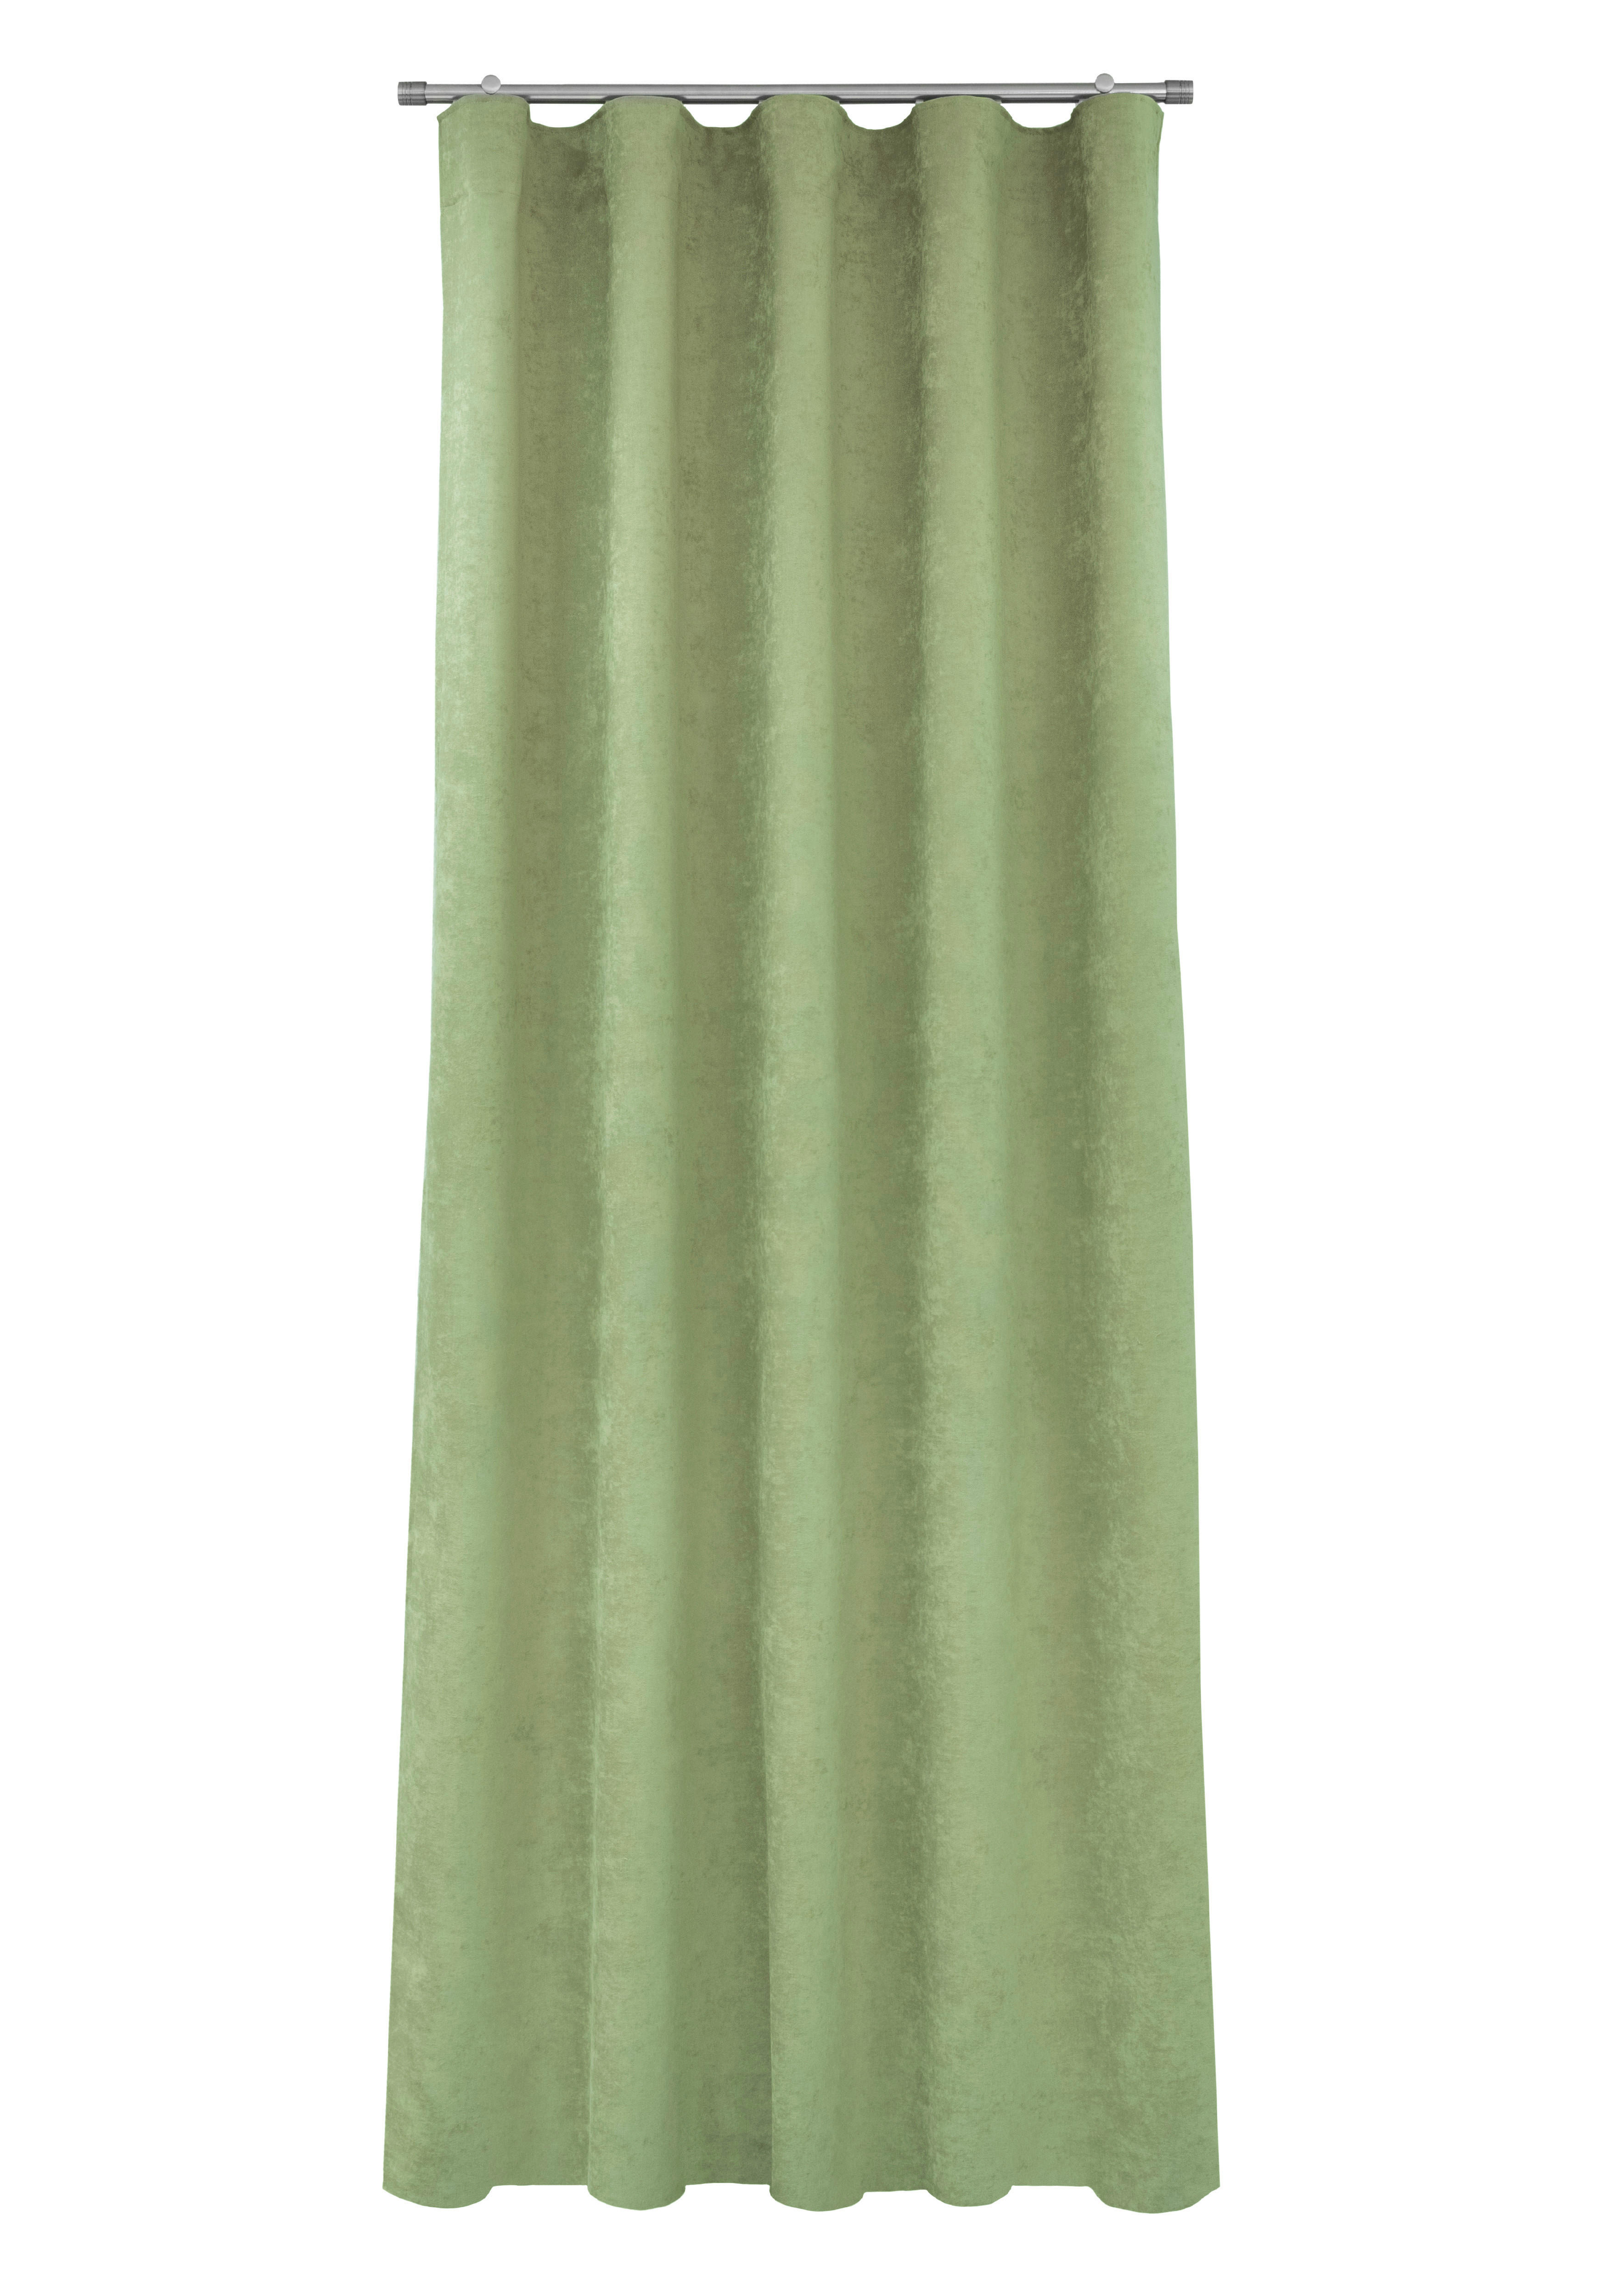 DRAPERIE GATA CONFECȚIONATĂ obscuritate  - verde, Basics, textil (140/250cm)